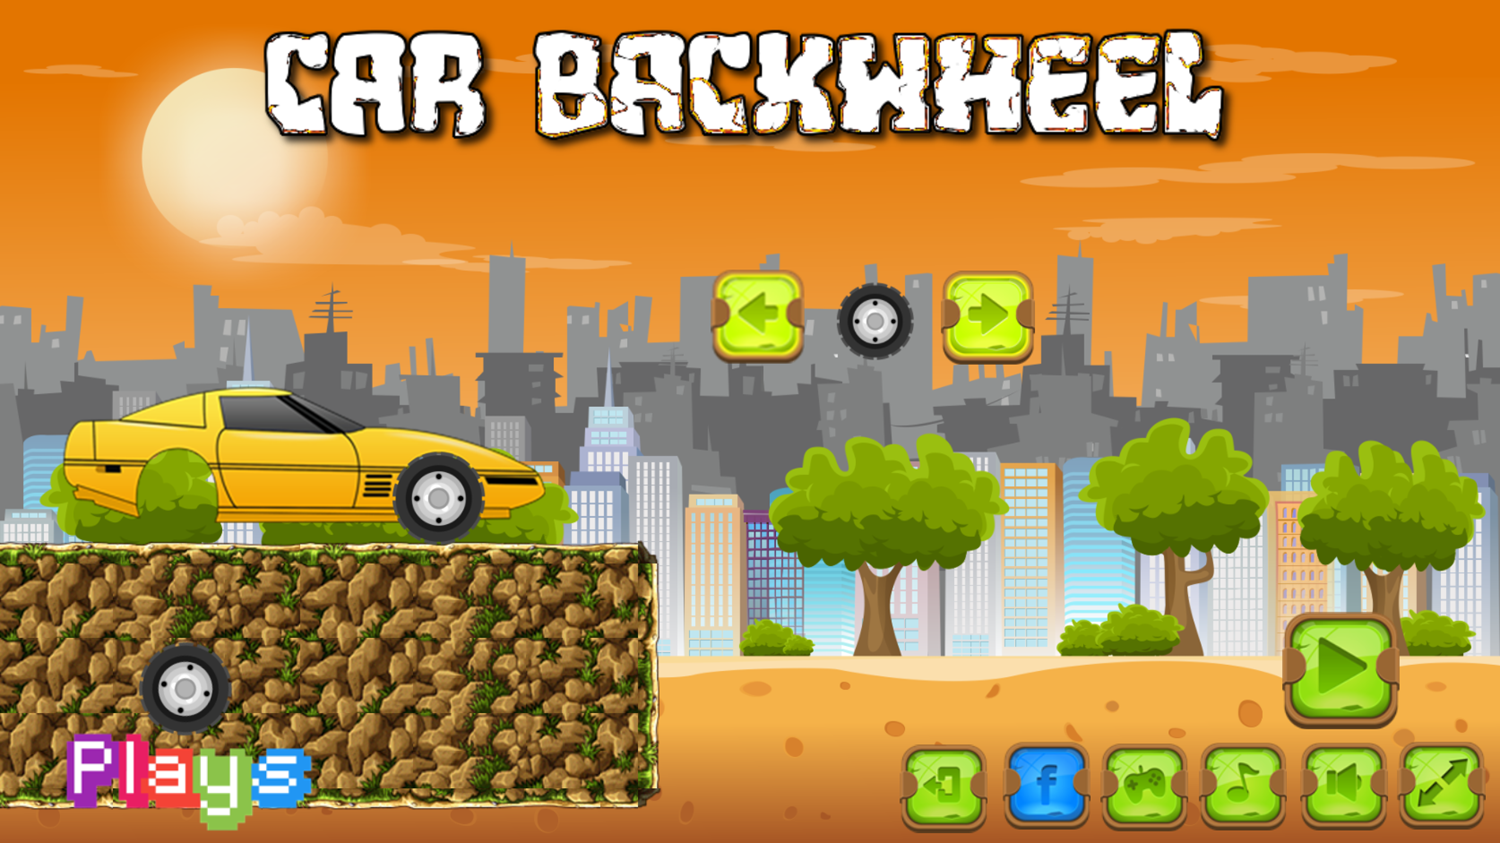 Car Backwheel Game Welcome Screen Screenshot.